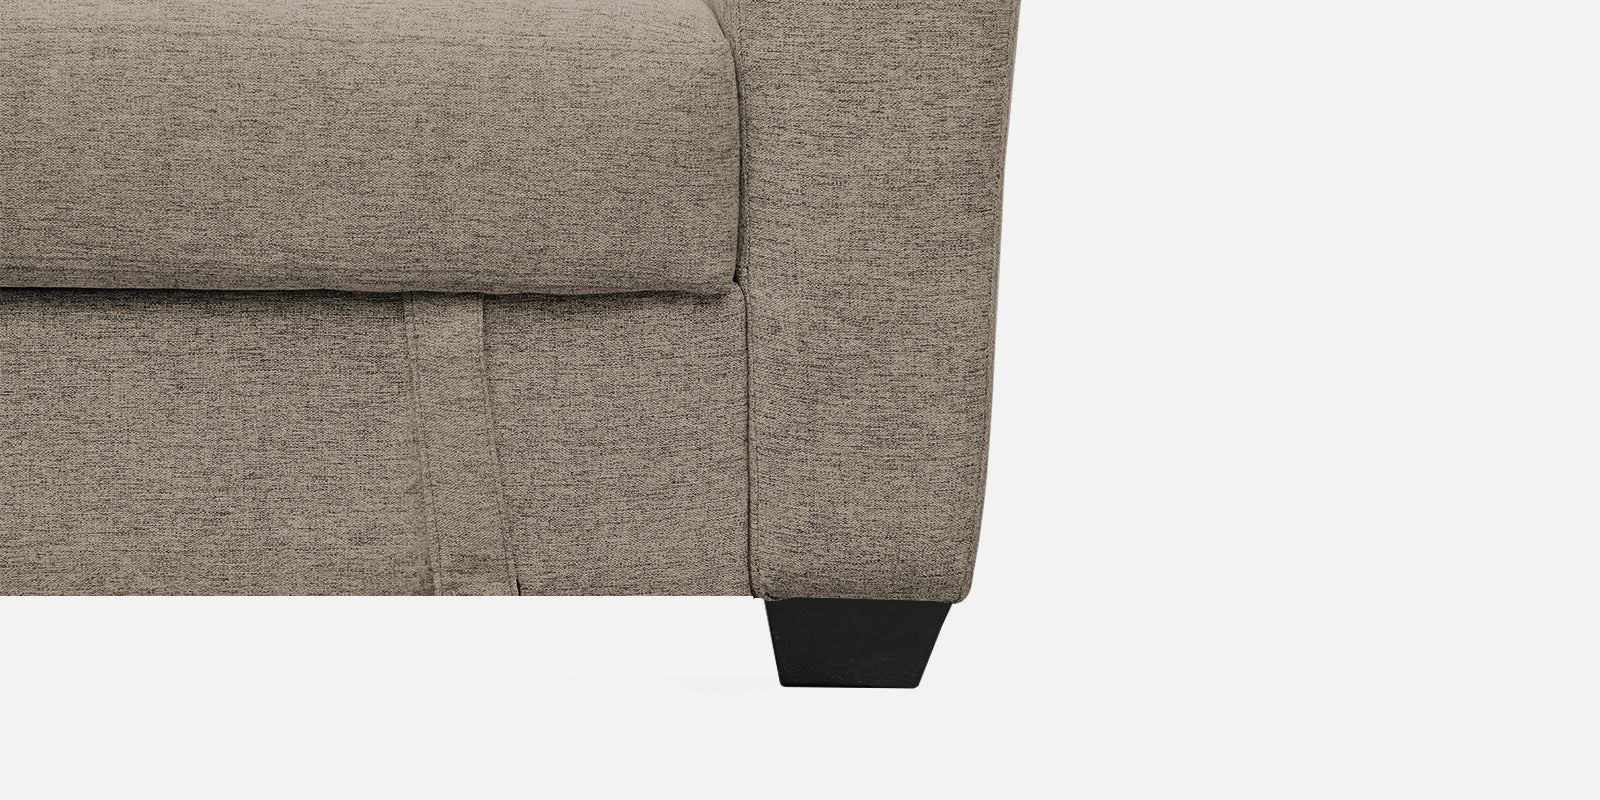 Bony Fabric 3 Seater Convertable Sofa Cum Bed In Khaki Beige Colour